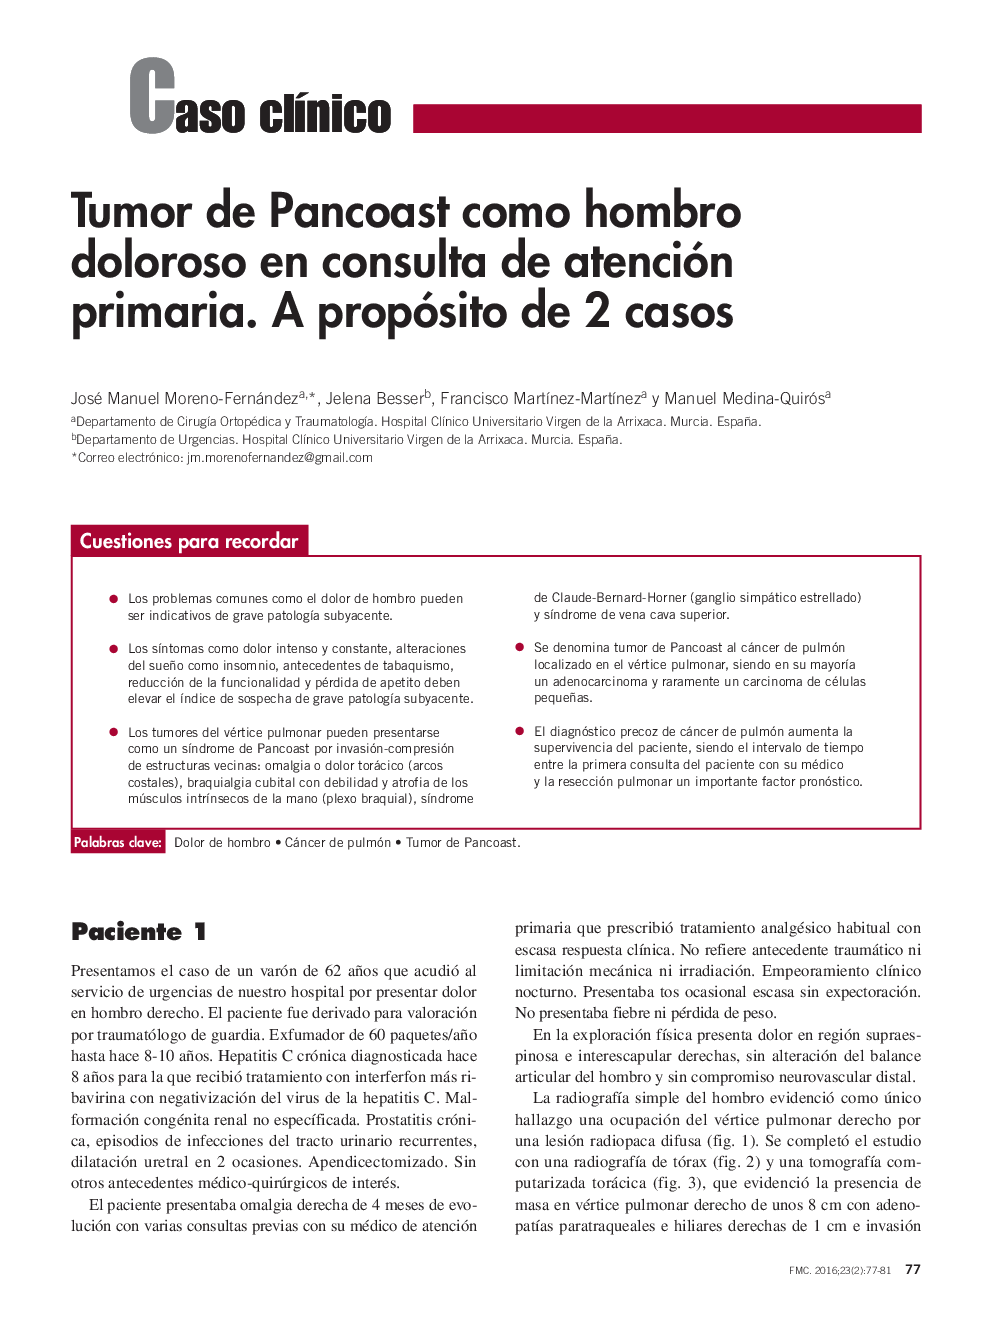 Tumor de Pancoast como hombro doloroso en consulta de atención primaria. A propósito de 2 casos